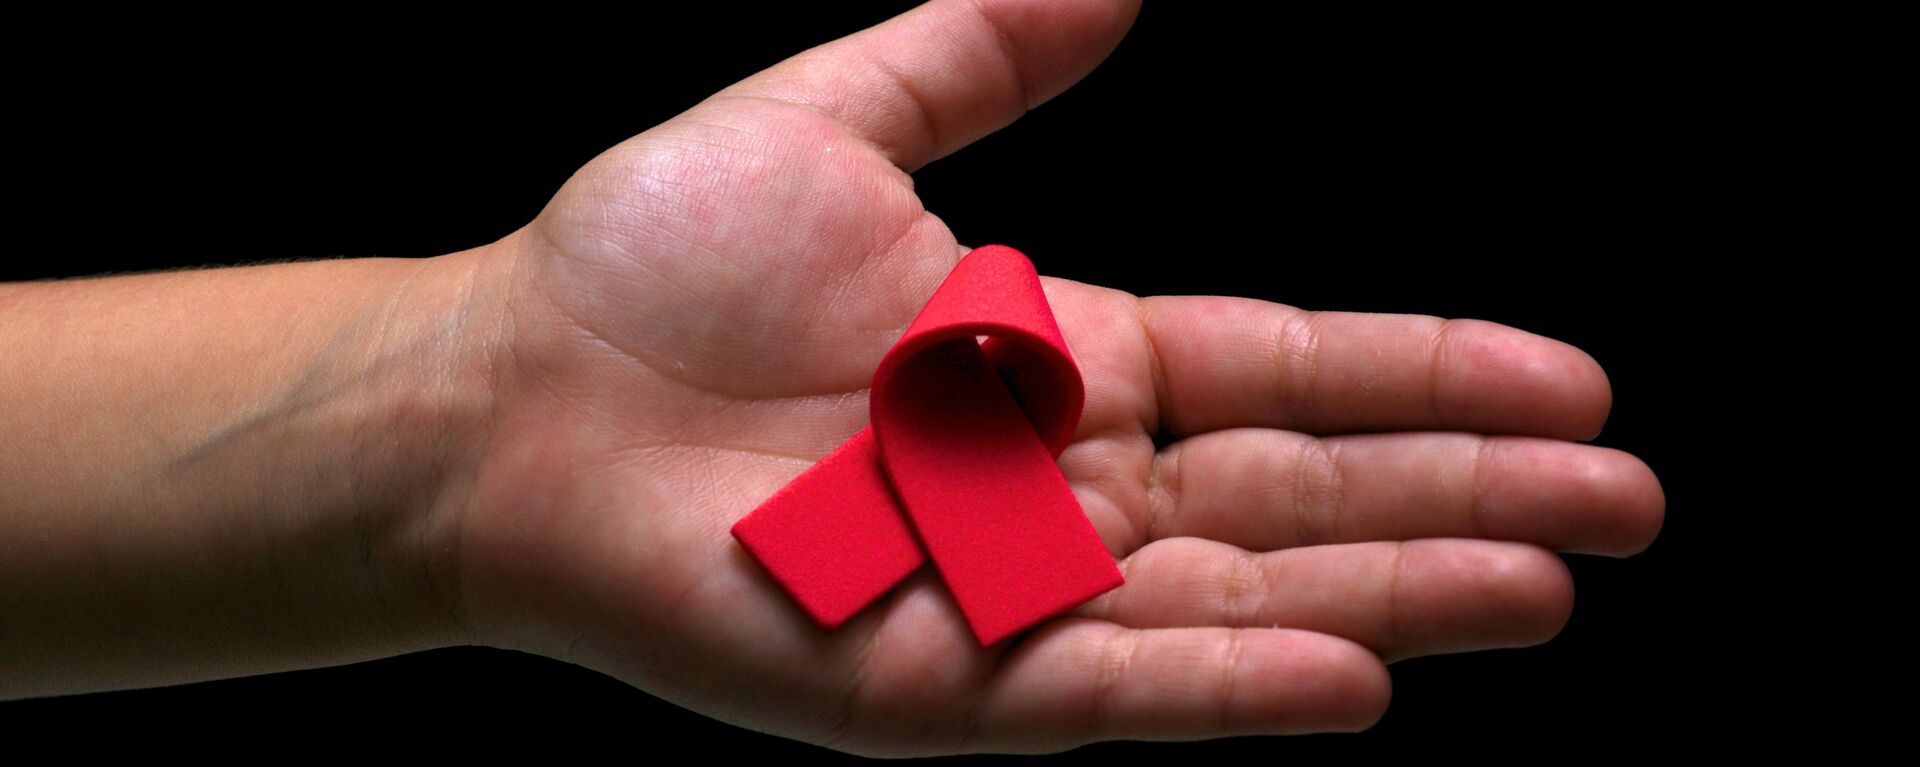 El lazo rojo, símbolo de la lucha contra el VIH y el SIDA  - Sputnik Mundo, 1920, 15.07.2022